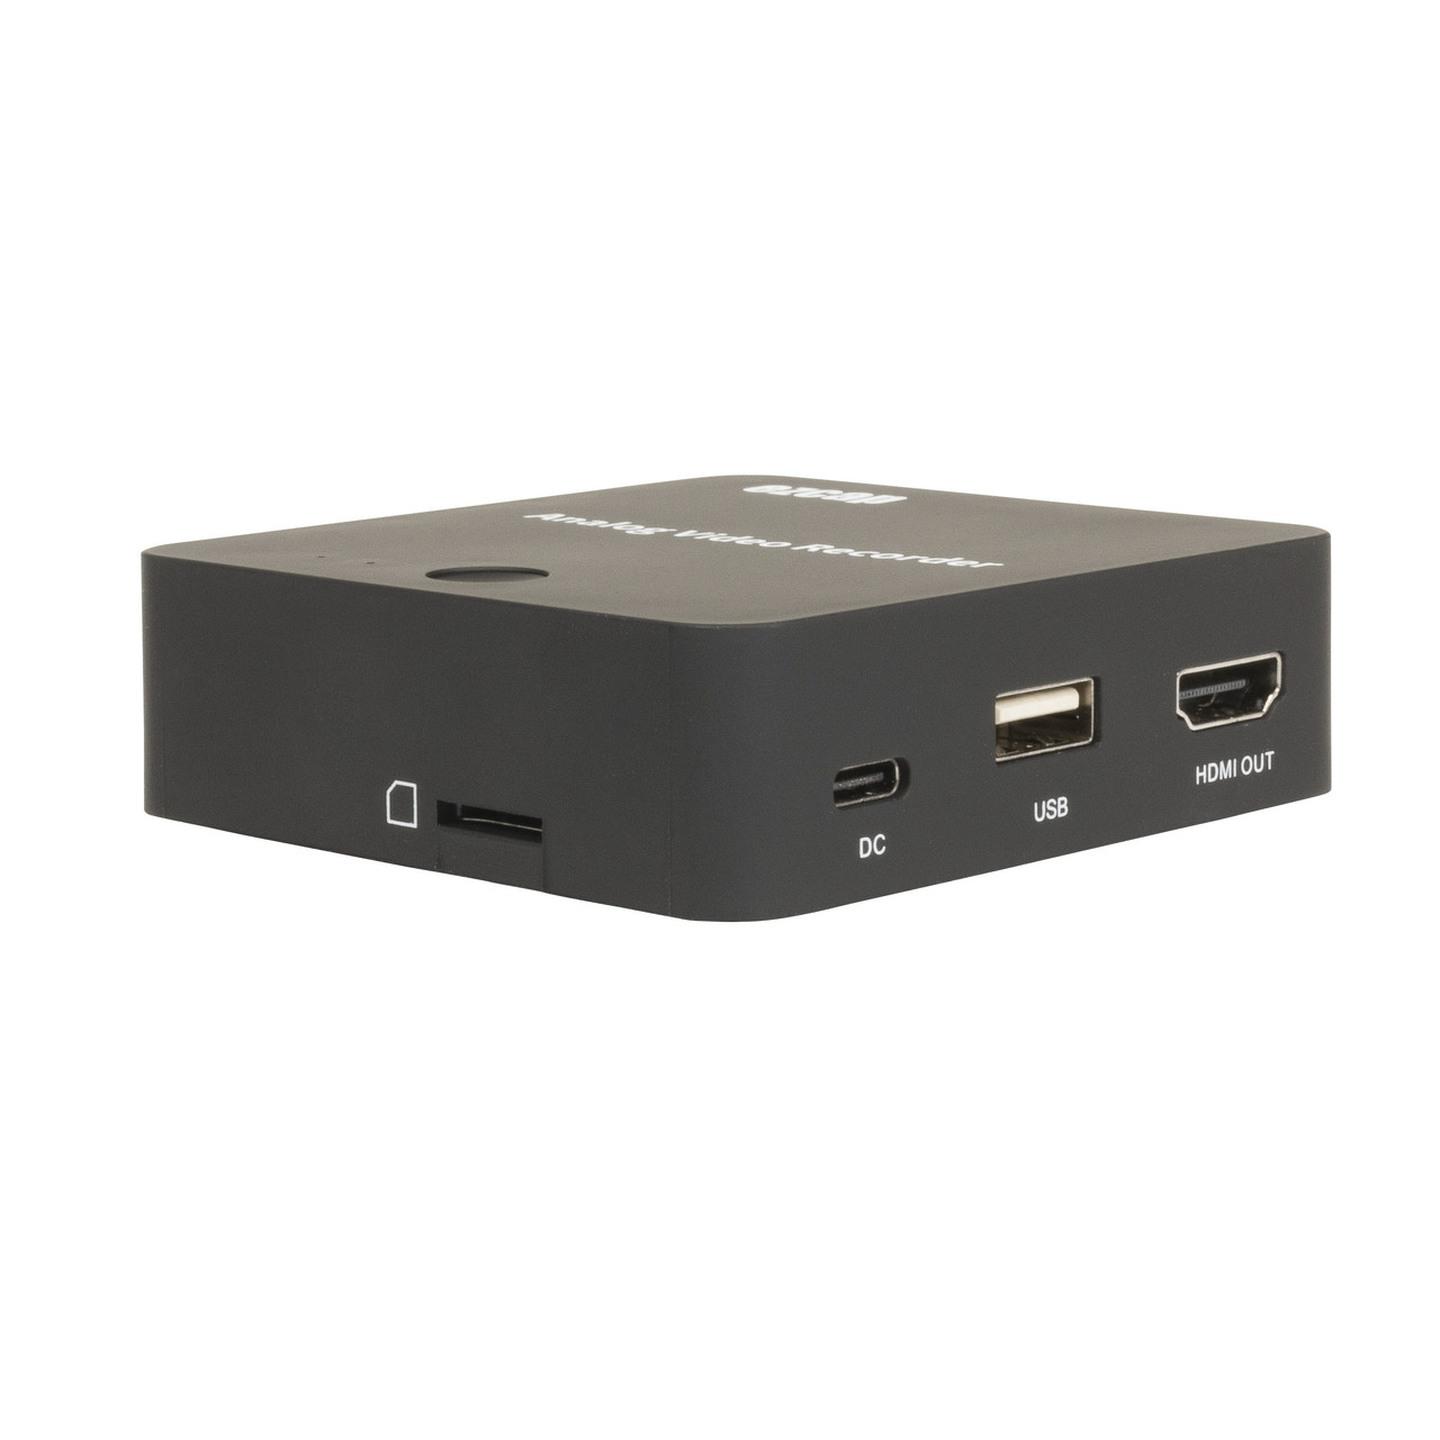 Digitech Composite AV to USB/microSD Video Recorder